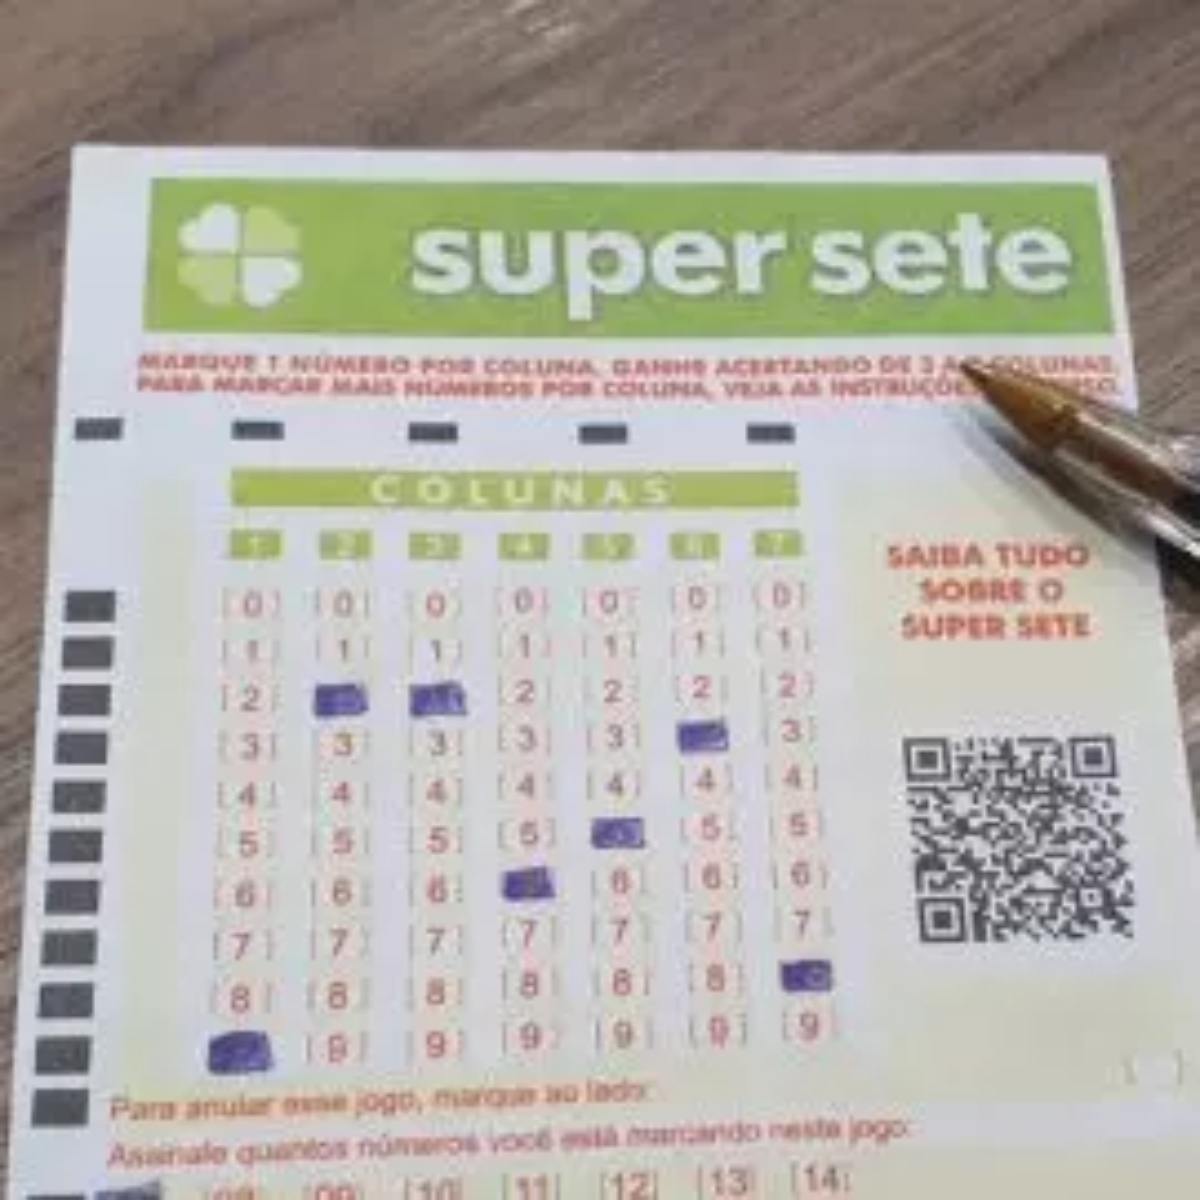 Super Sete 523 - Loterias